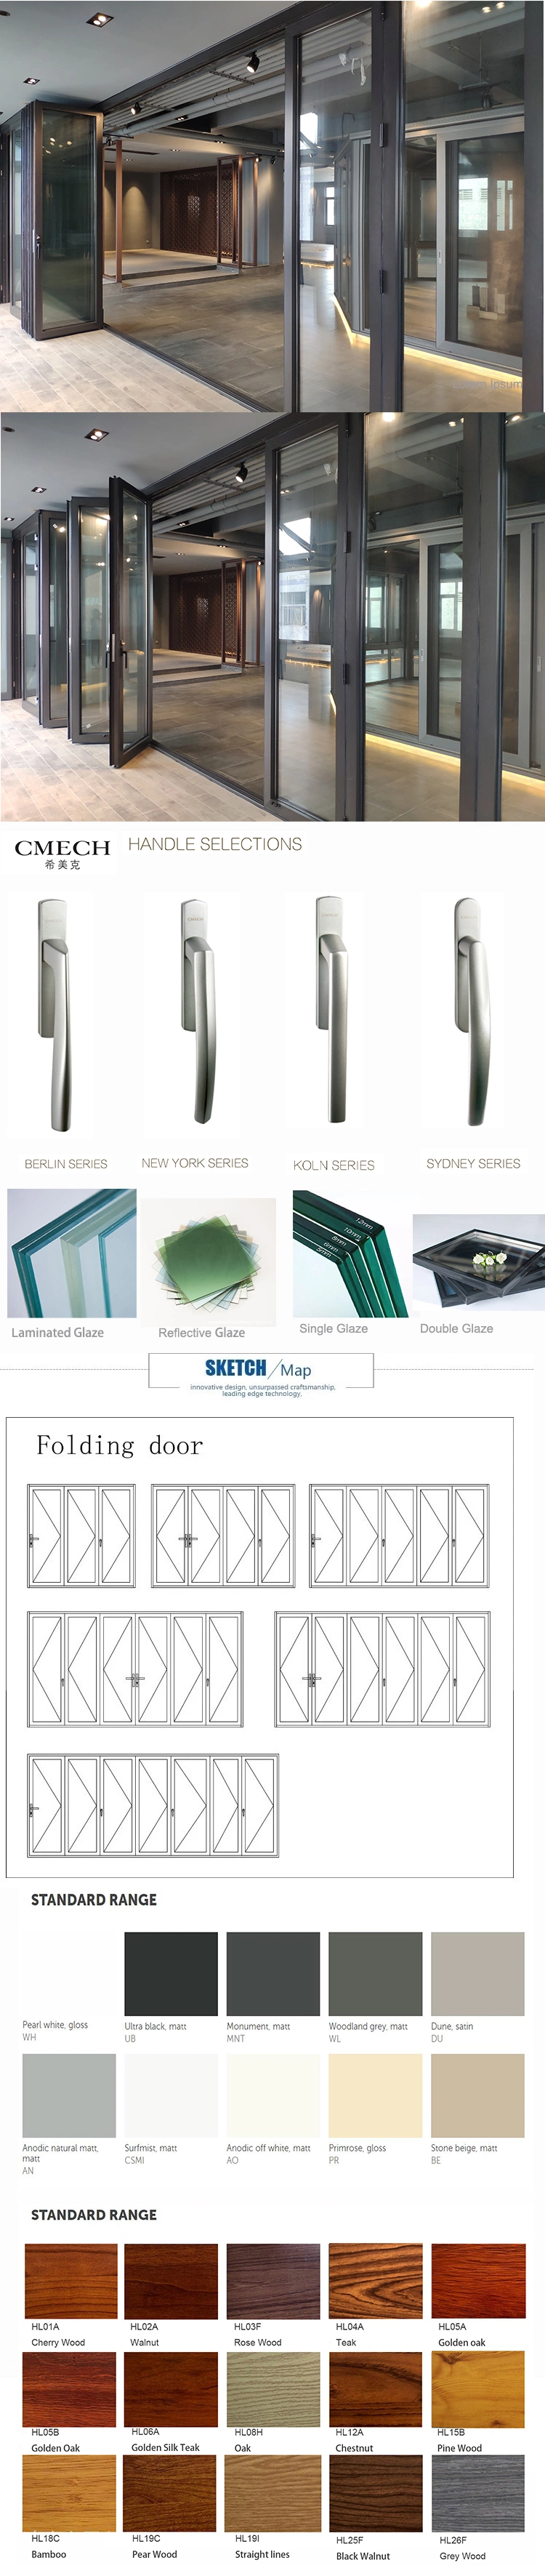 Classic Double Glass Entry Bi Folding Door Aluminum Door